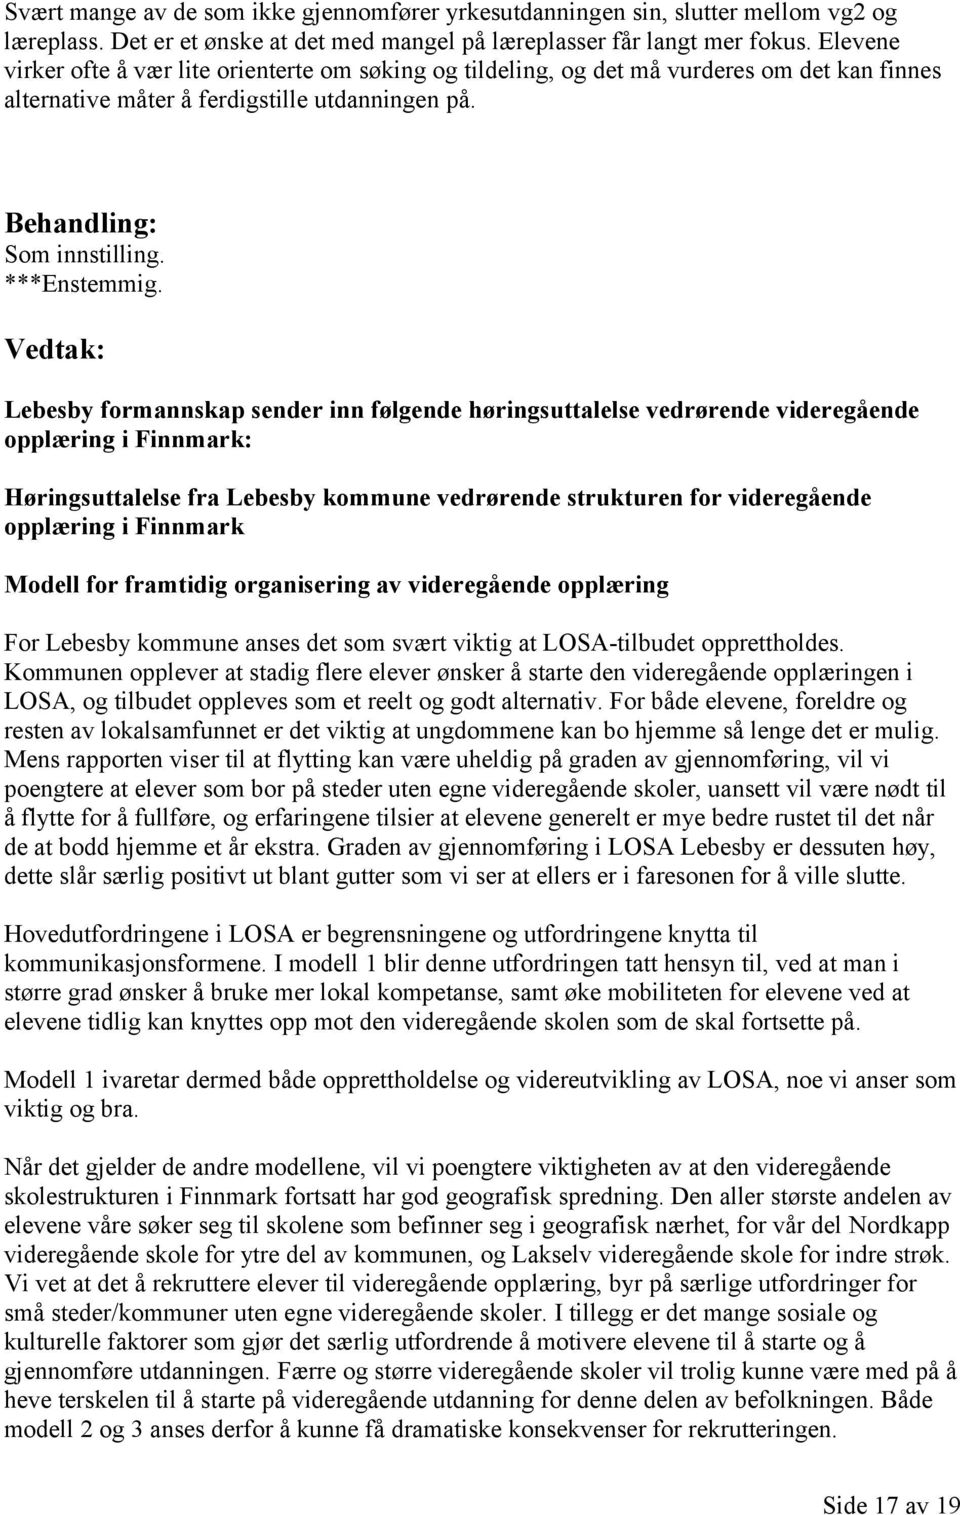 Lebesby formannskap sender inn følgende høringsuttalelse vedrørende videregående opplæring i Finnmark: Høringsuttalelse fra Lebesby kommune vedrørende strukturen for videregående opplæring i Finnmark